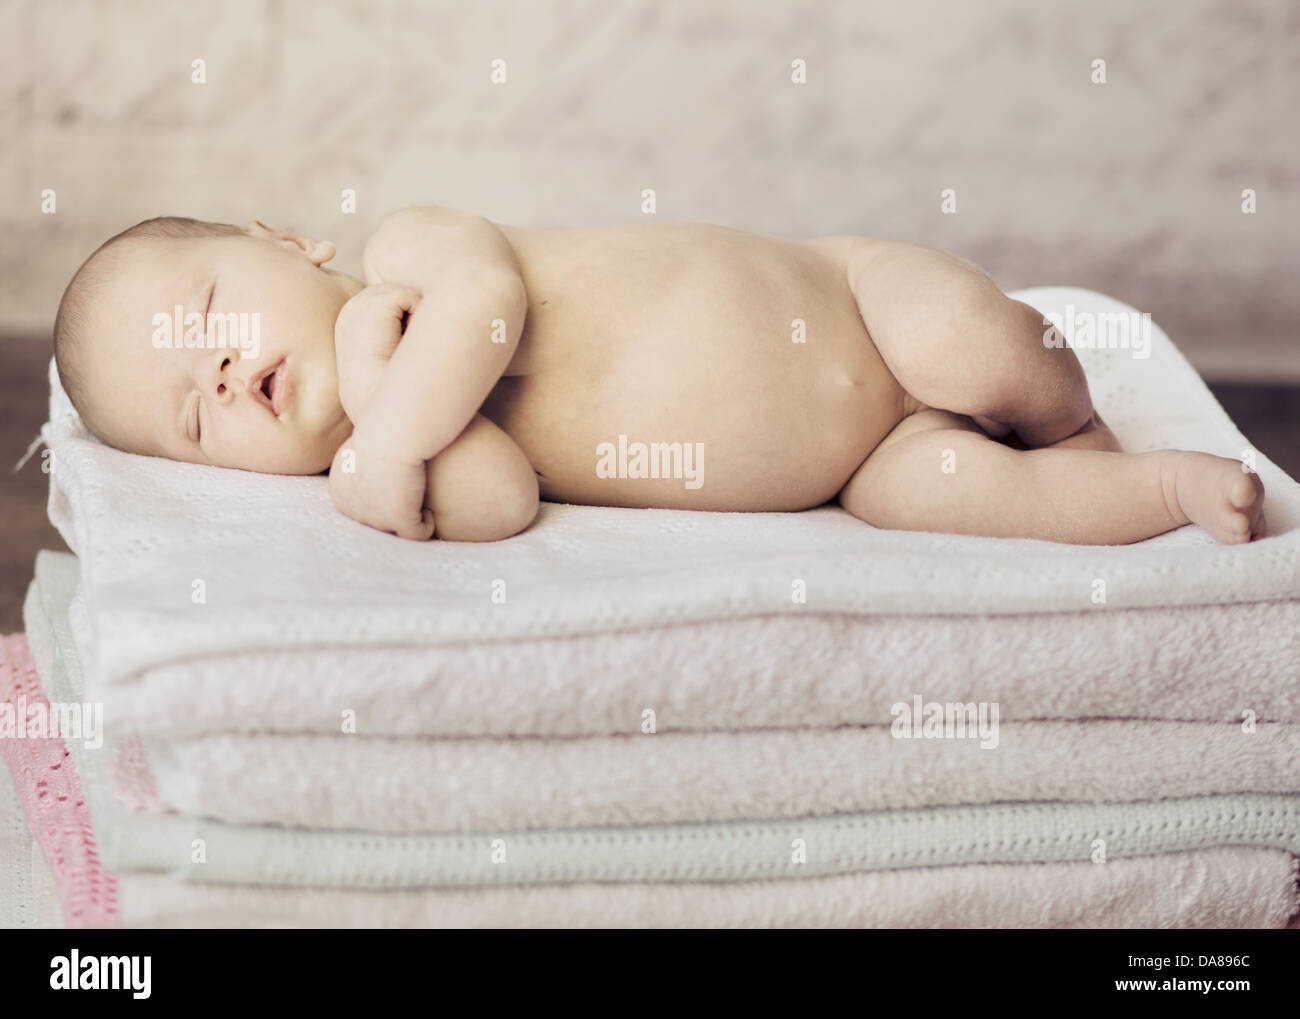 Nice photo of cute sleeping newborn baby Stock Photo